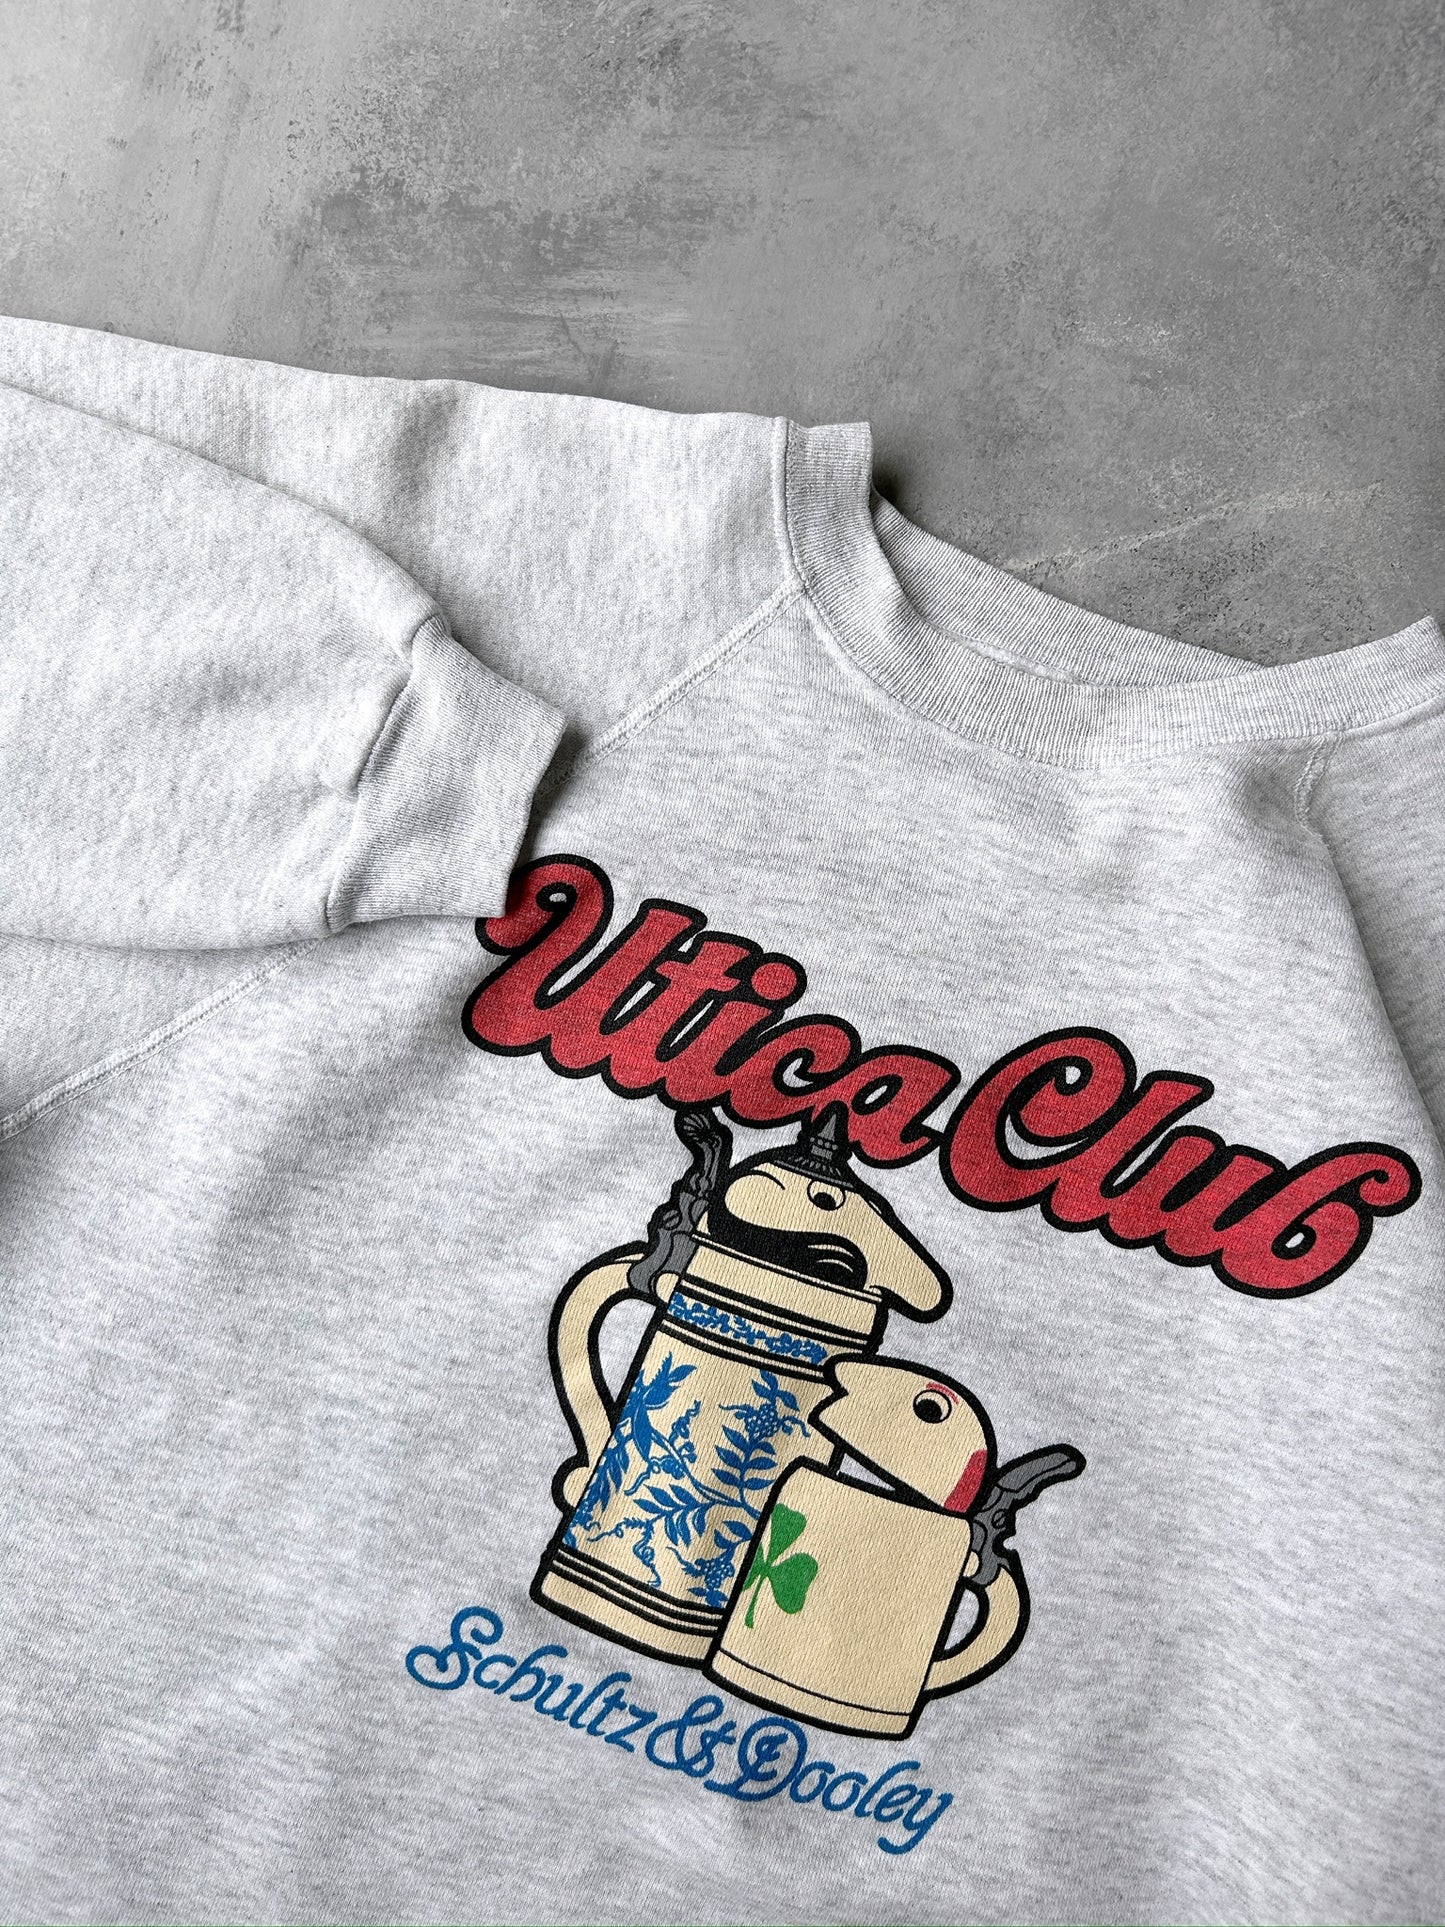 Utica Club Beer Sweatshirt 00's - Large